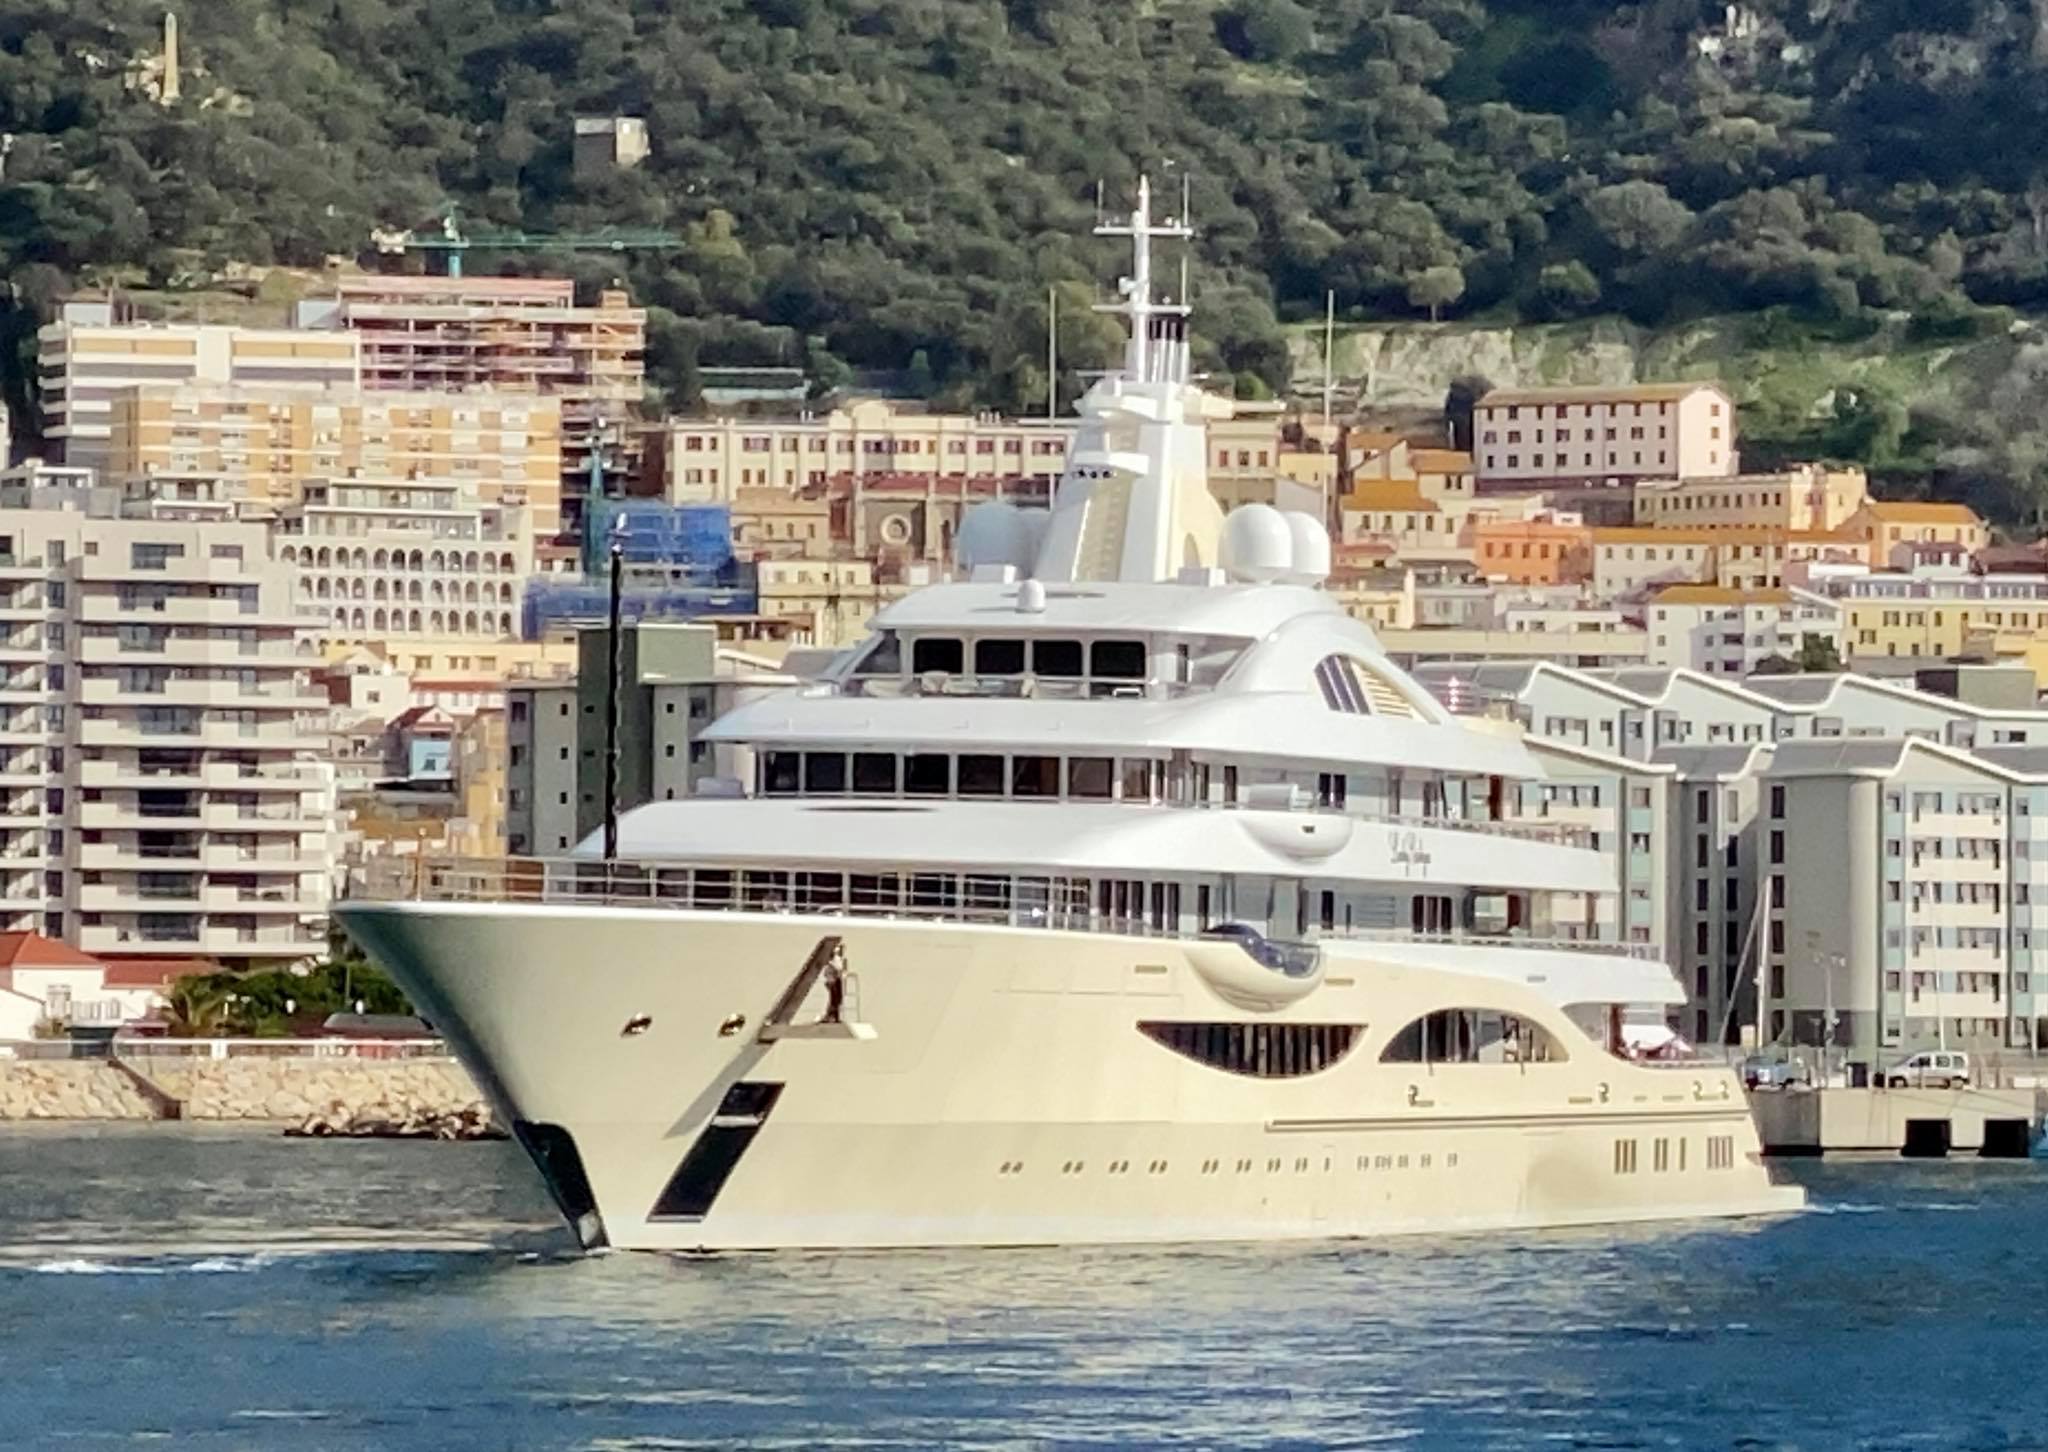 LADY GULYA Yacht • Alisher Usmanov $300M Superyacht • Lurssen • 2019